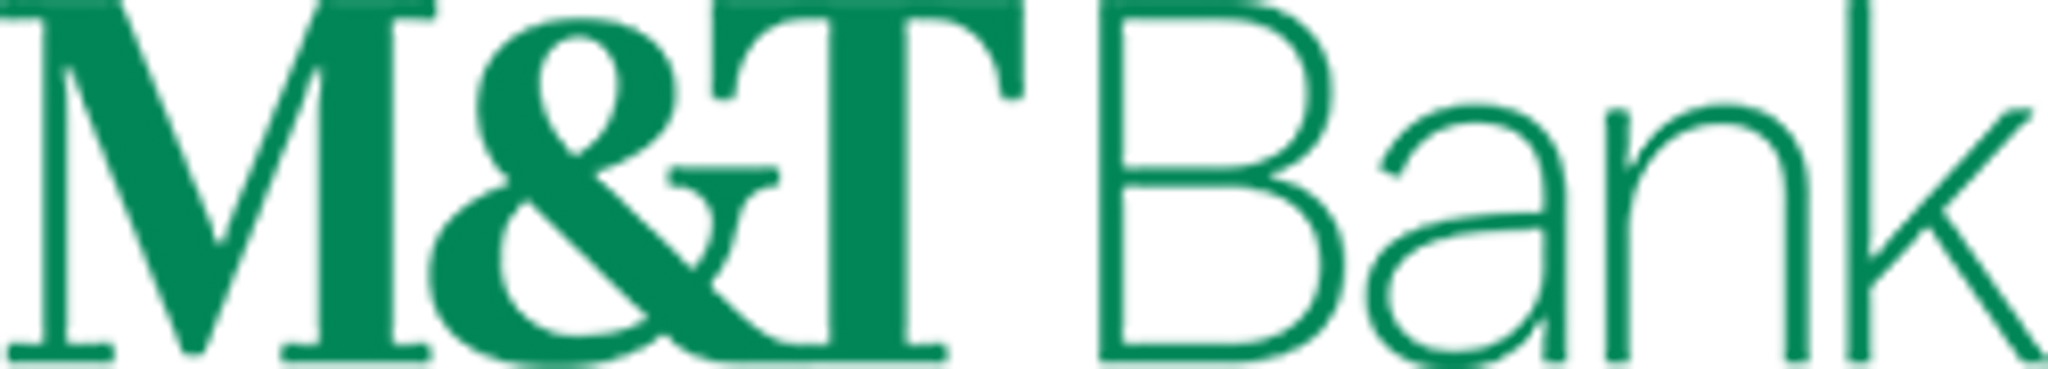 logo of M&T bank